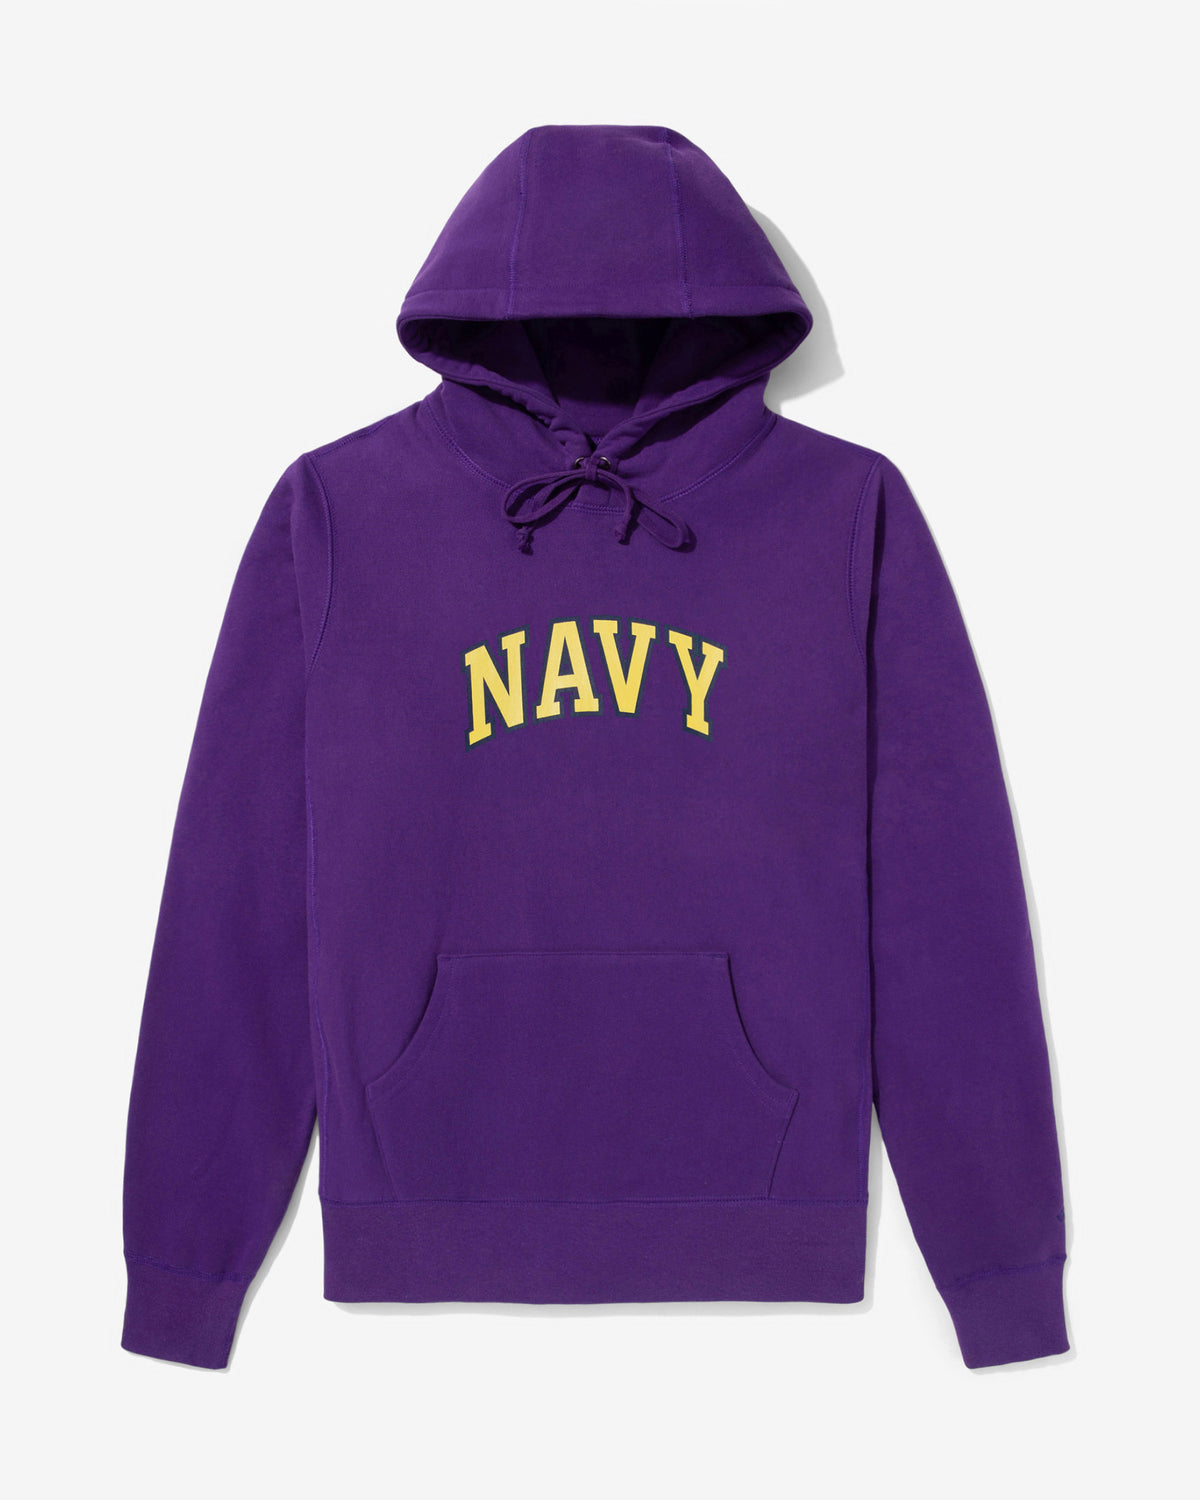 Navy Hoodie